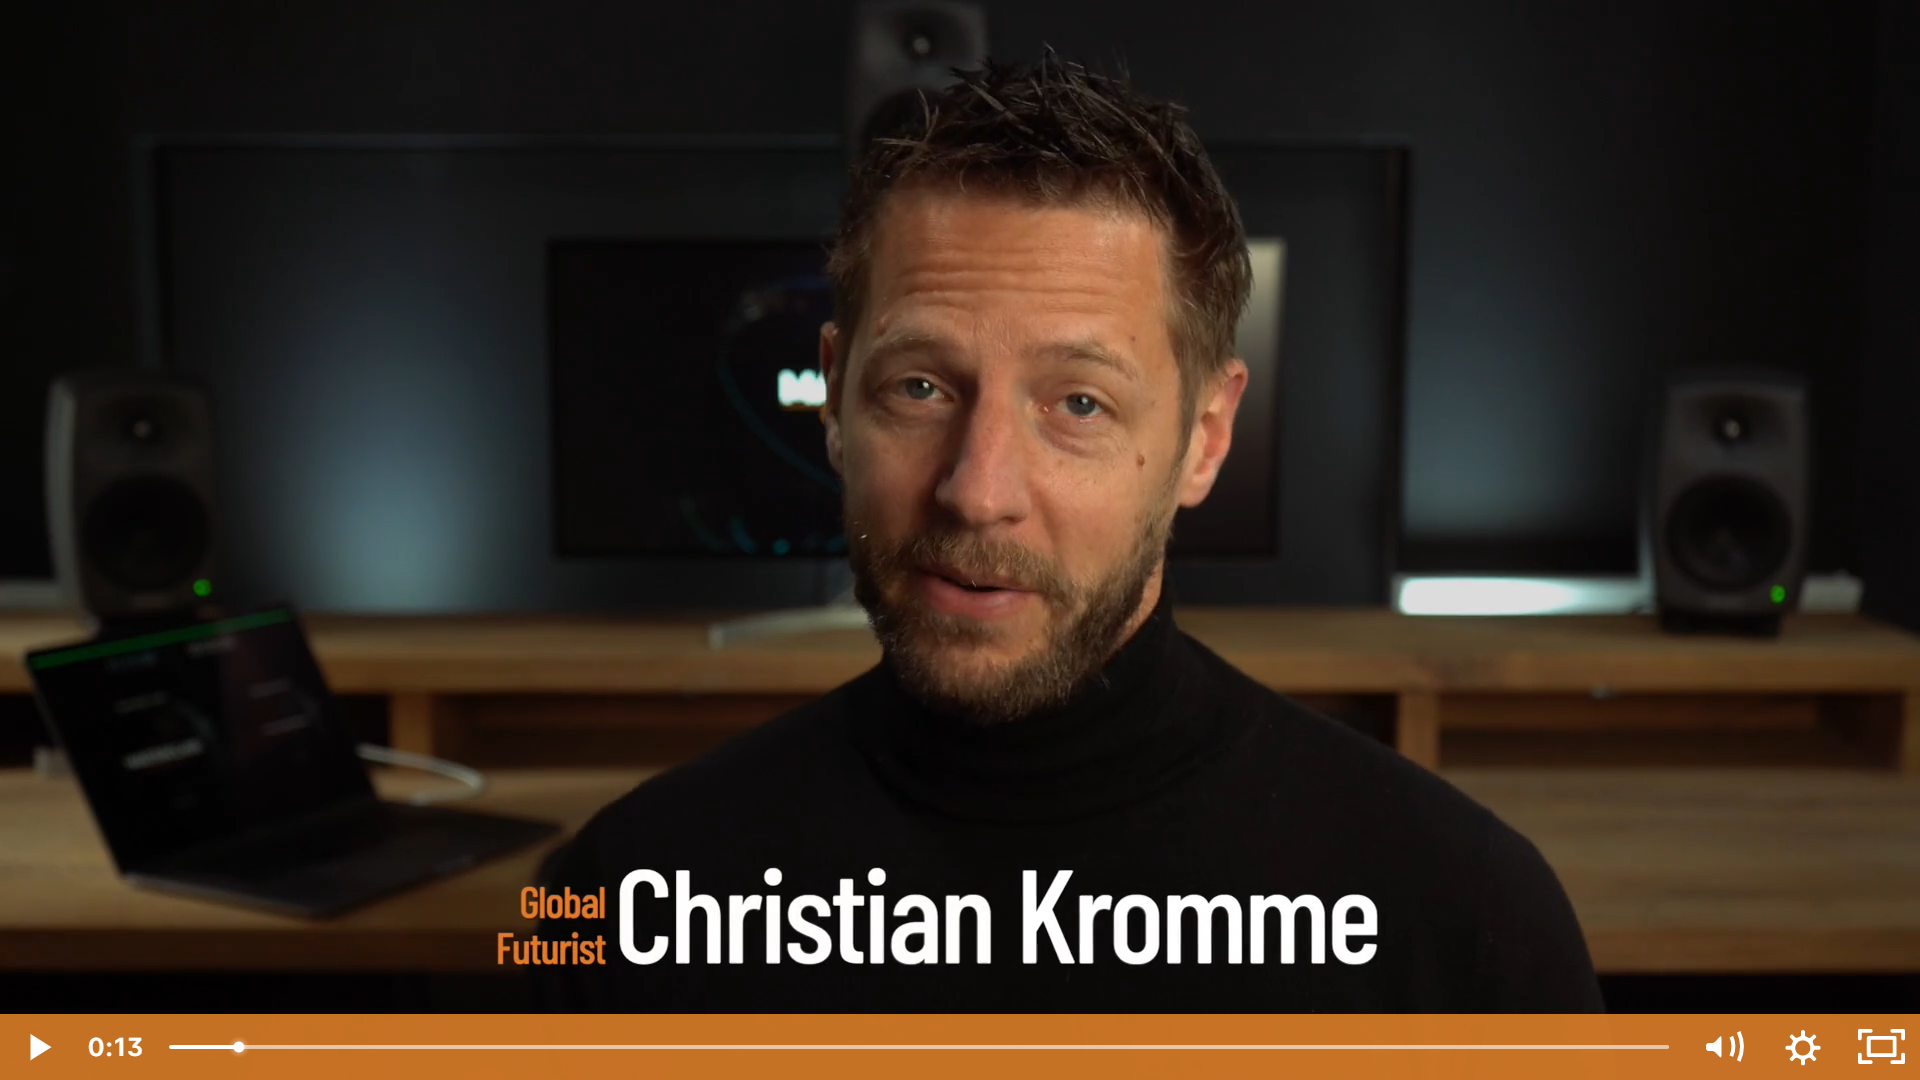 Christian Kromme aan het praten binnen in zwarte coltrui